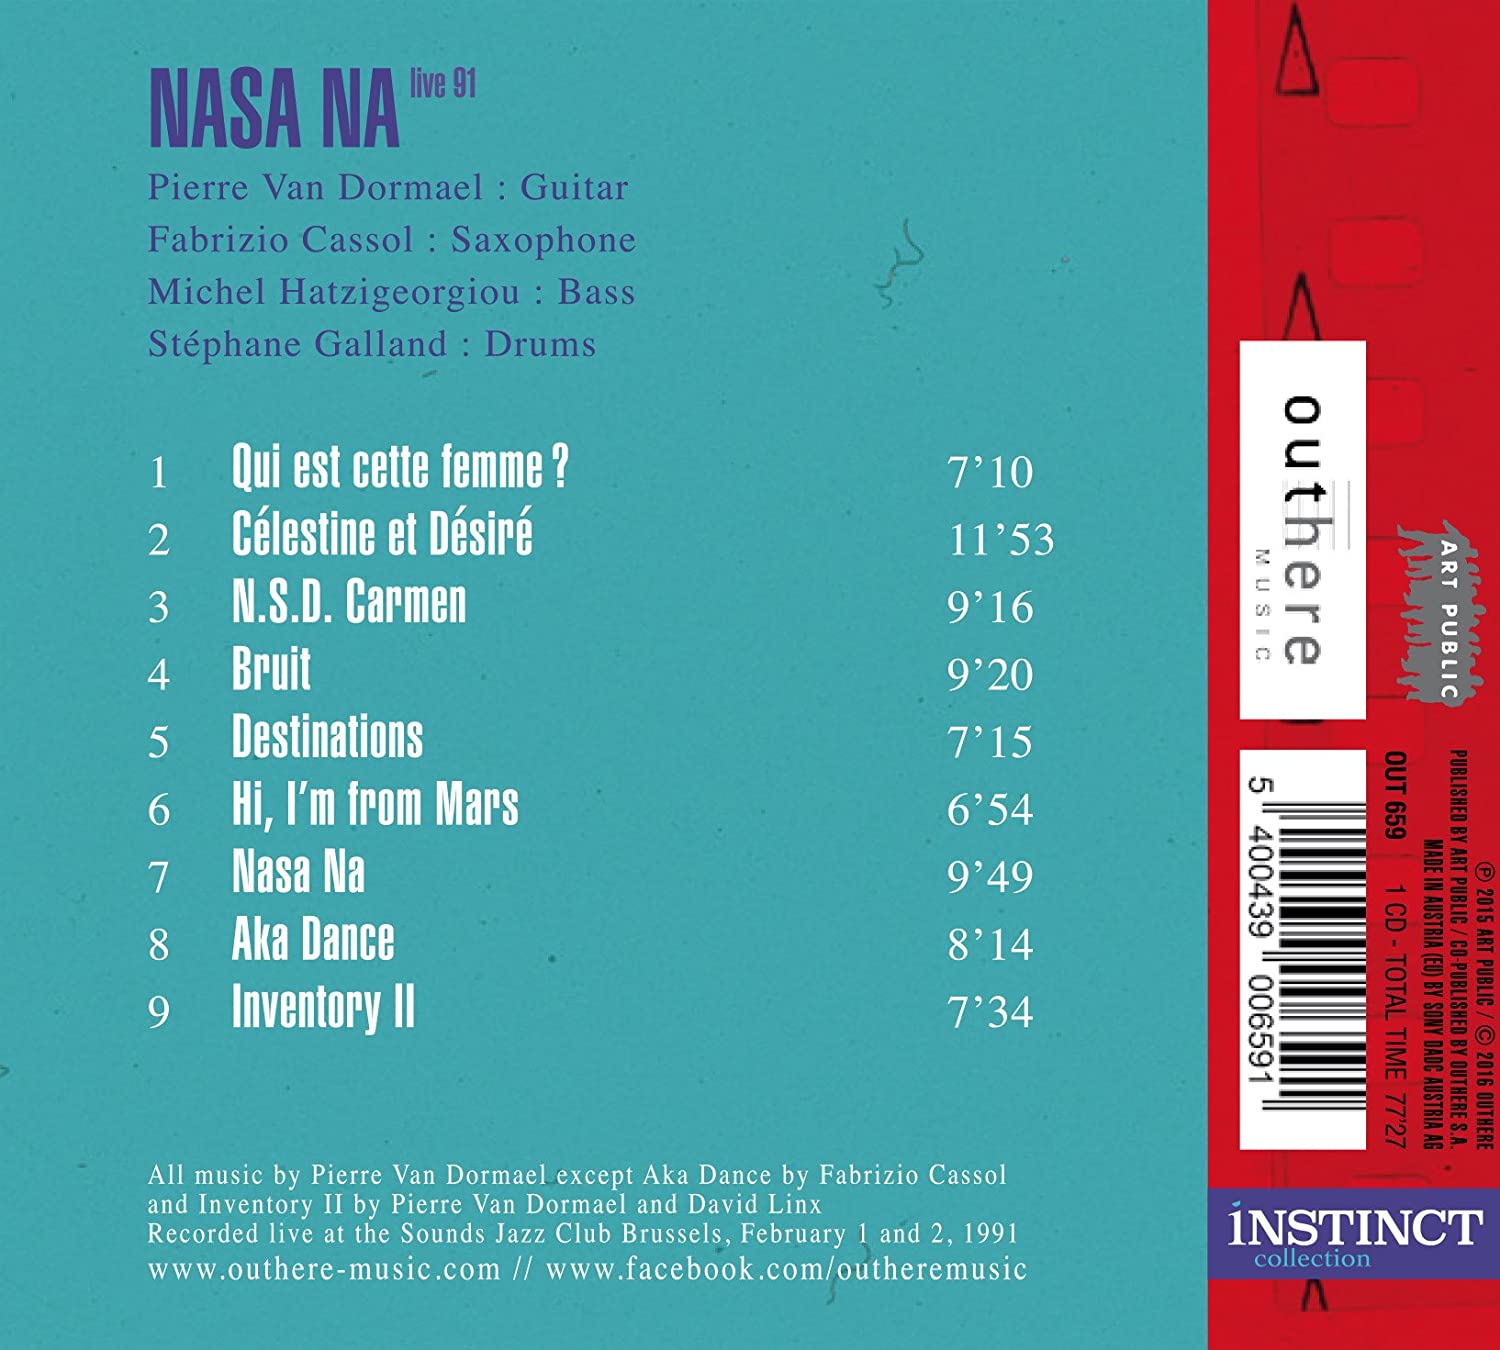 NASA NA: Live 91 - slide-1